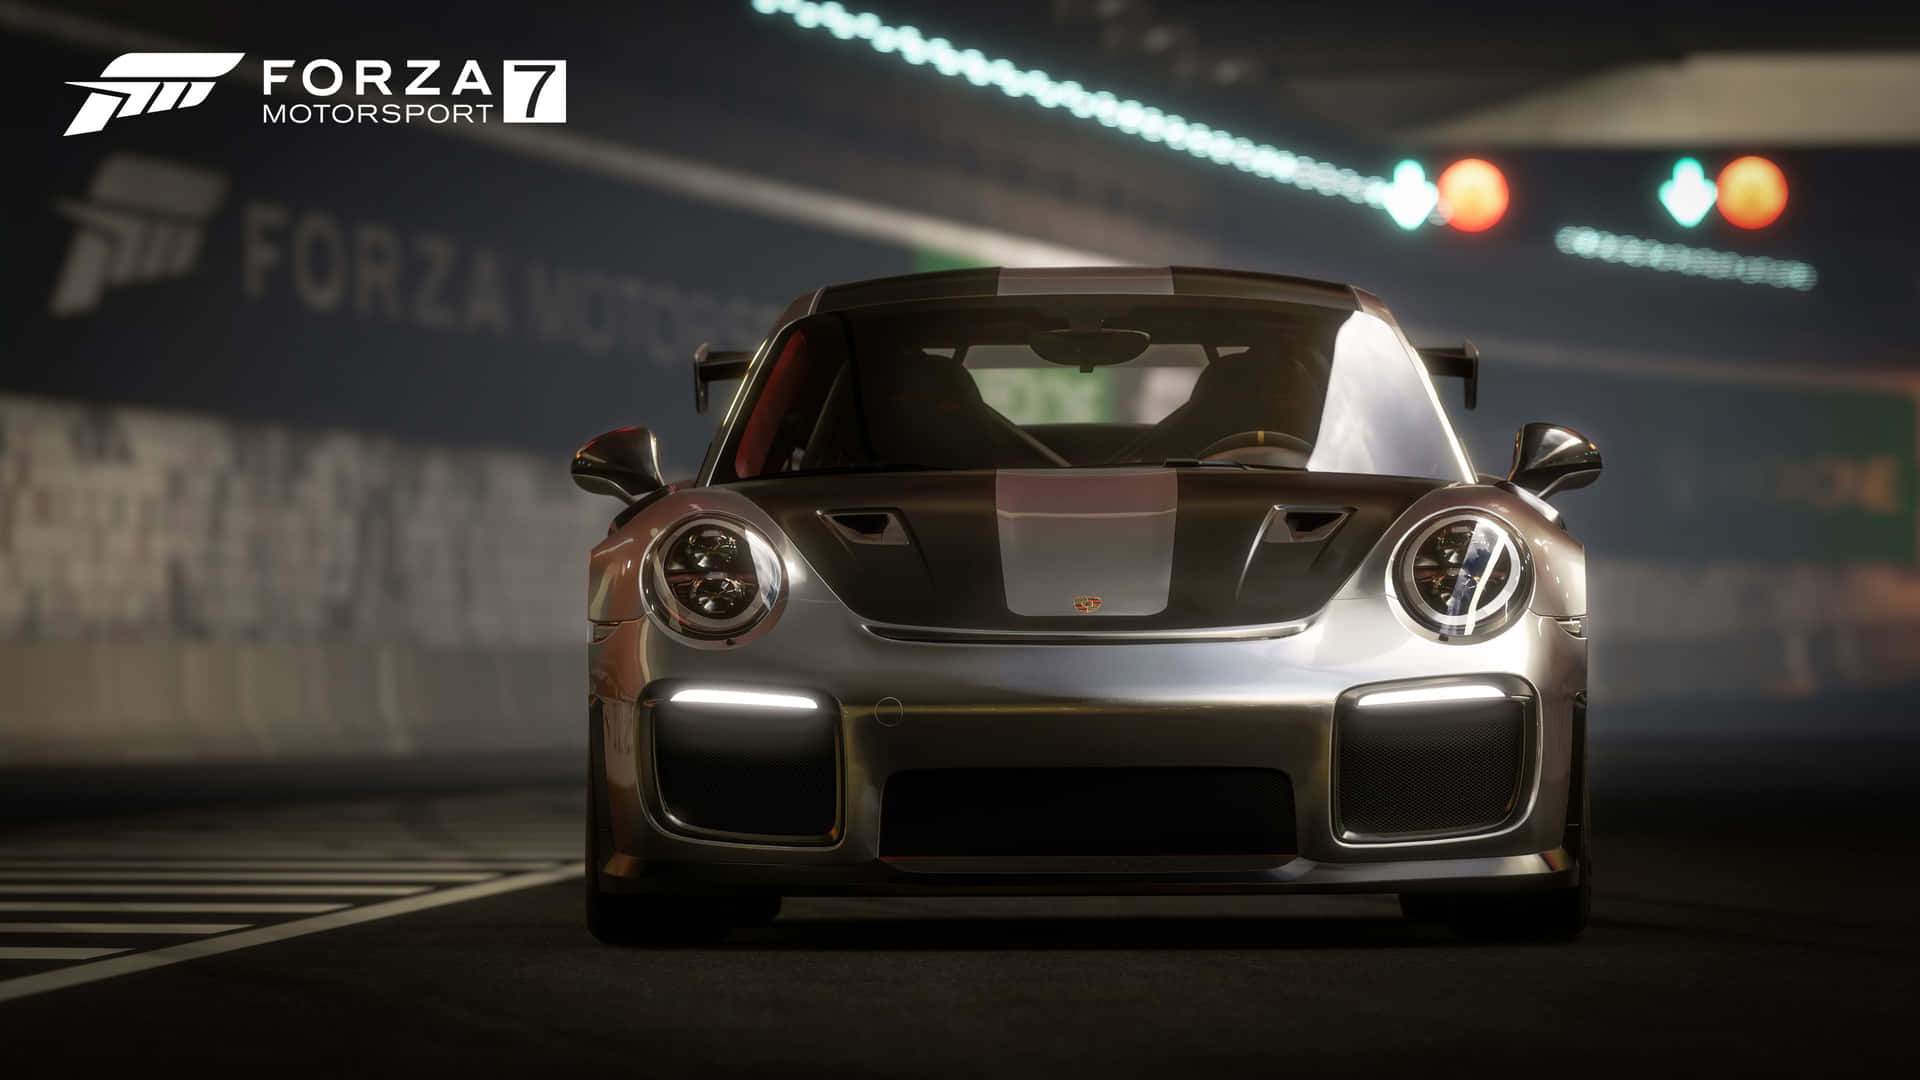 Føl magten af Forza i luksuriøse Race Tracks. Wallpaper